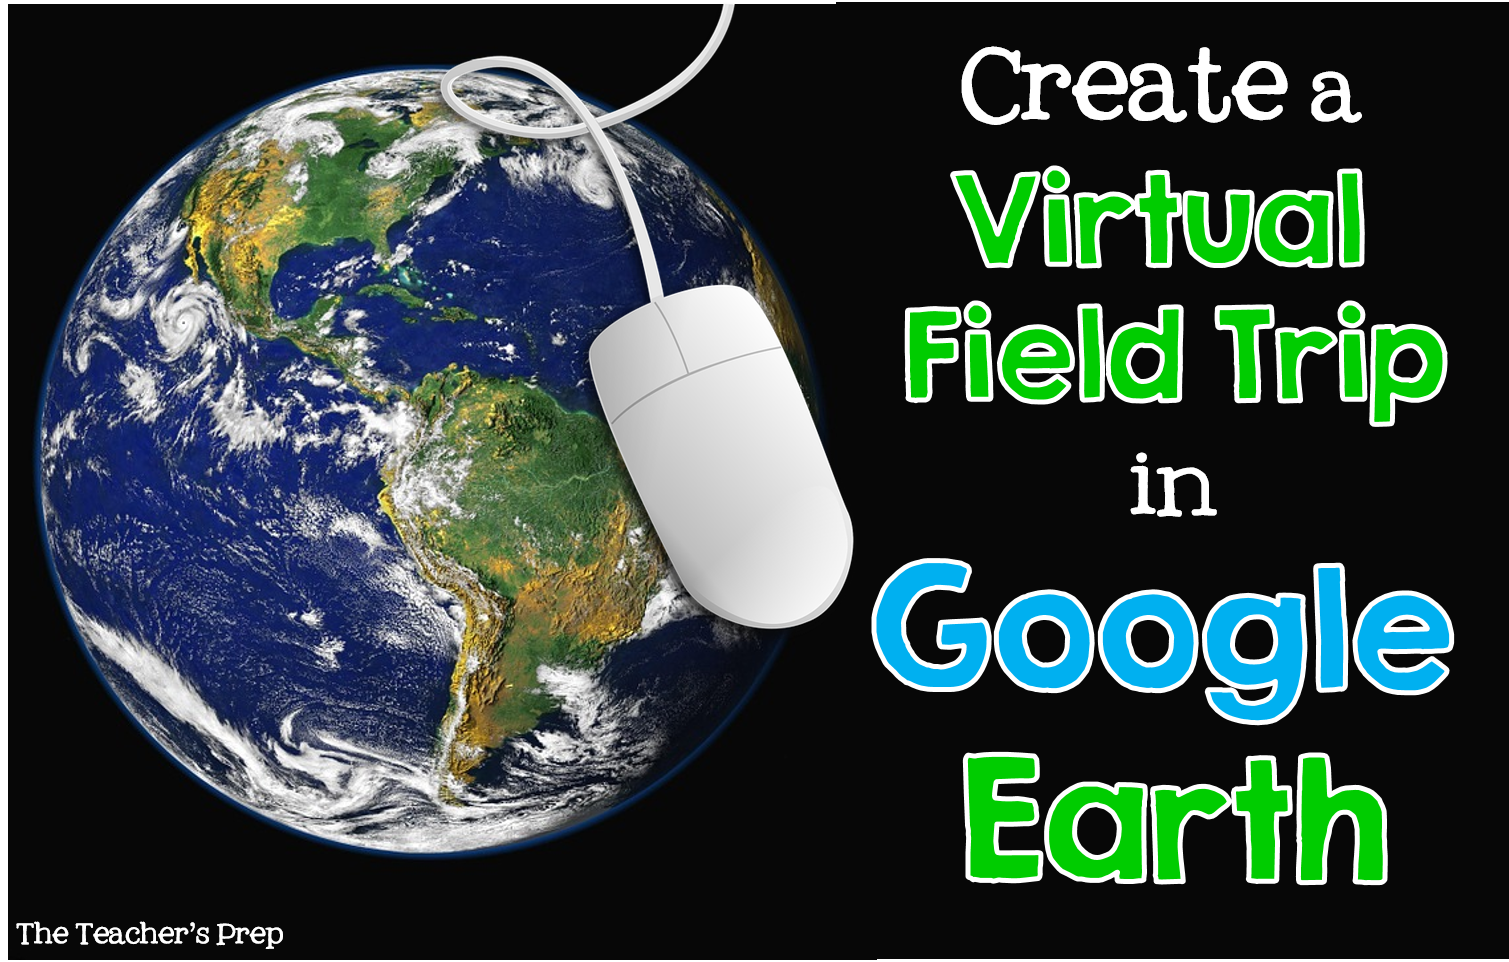 The Teacher's Prep: Create a Virtual Field Trip using Google Earth